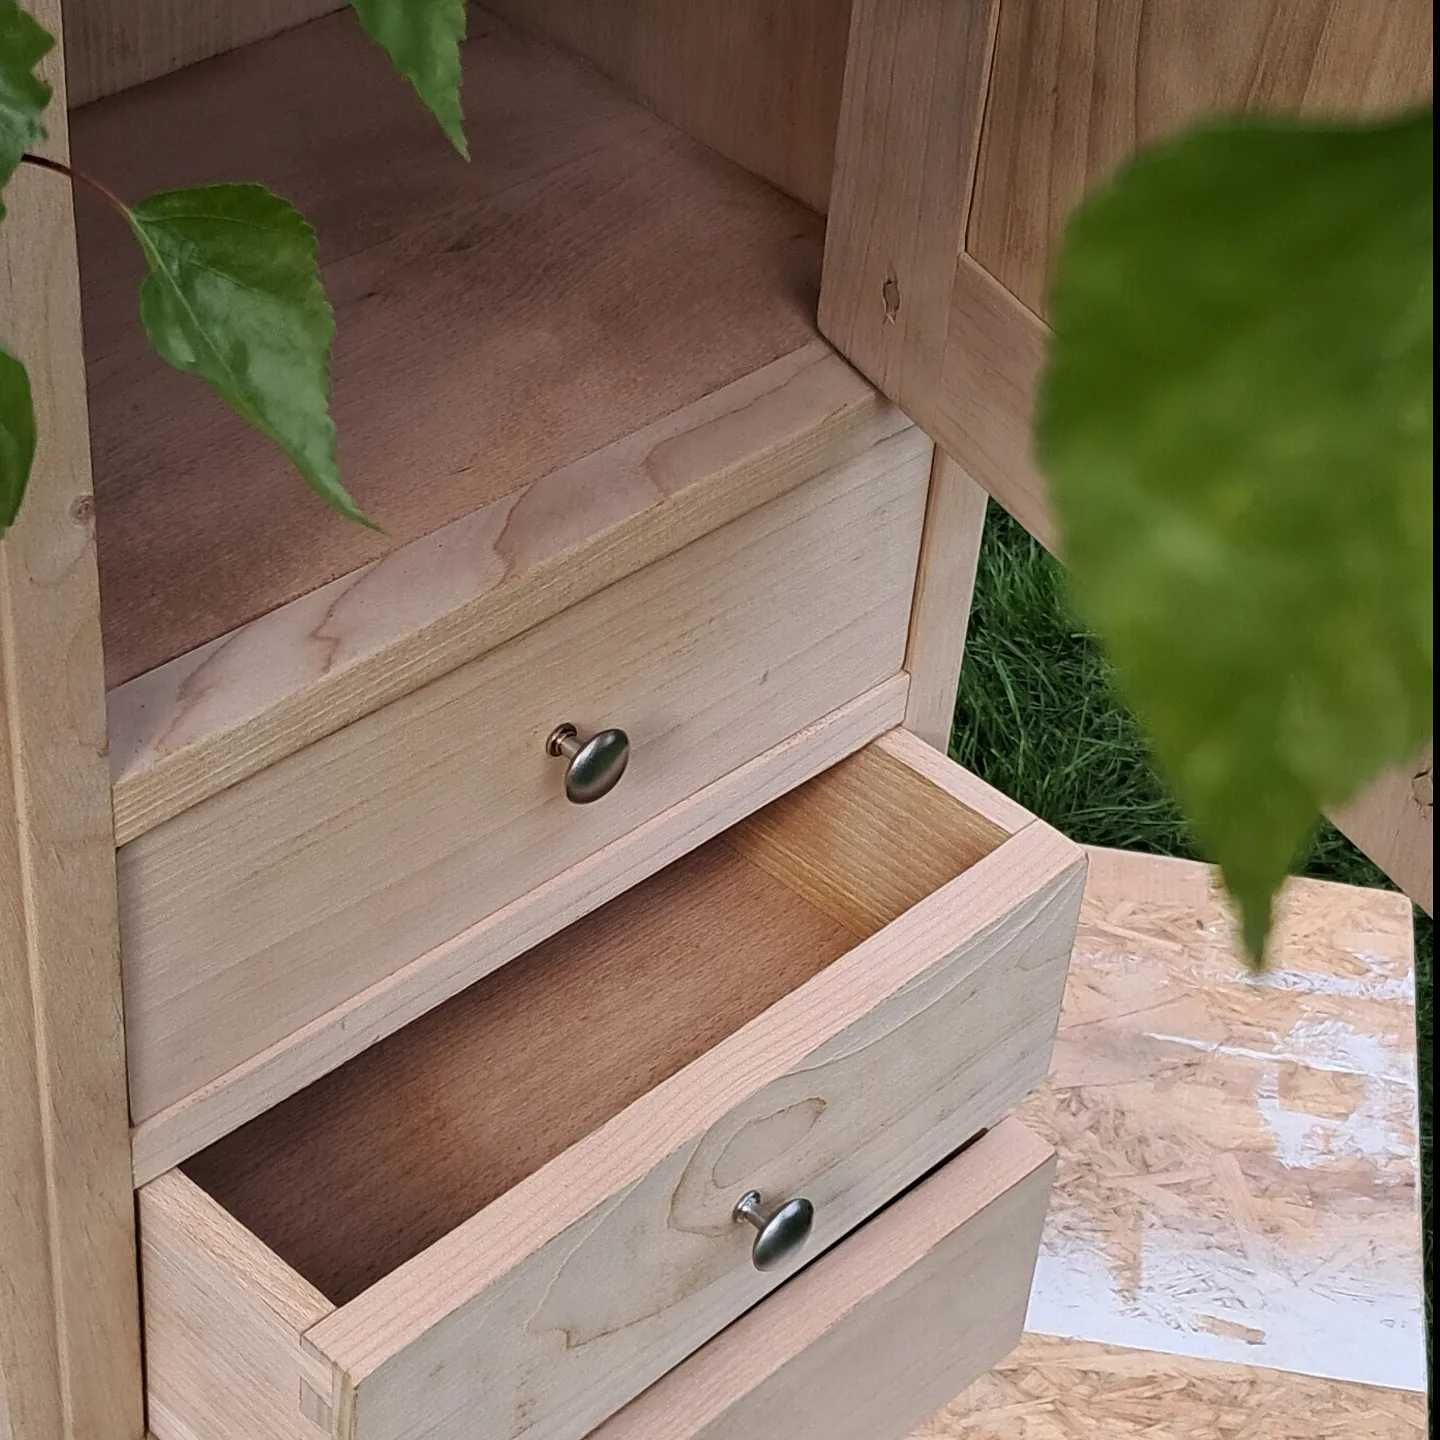 szafka drewniana stara oczyszczona do surowego drewna